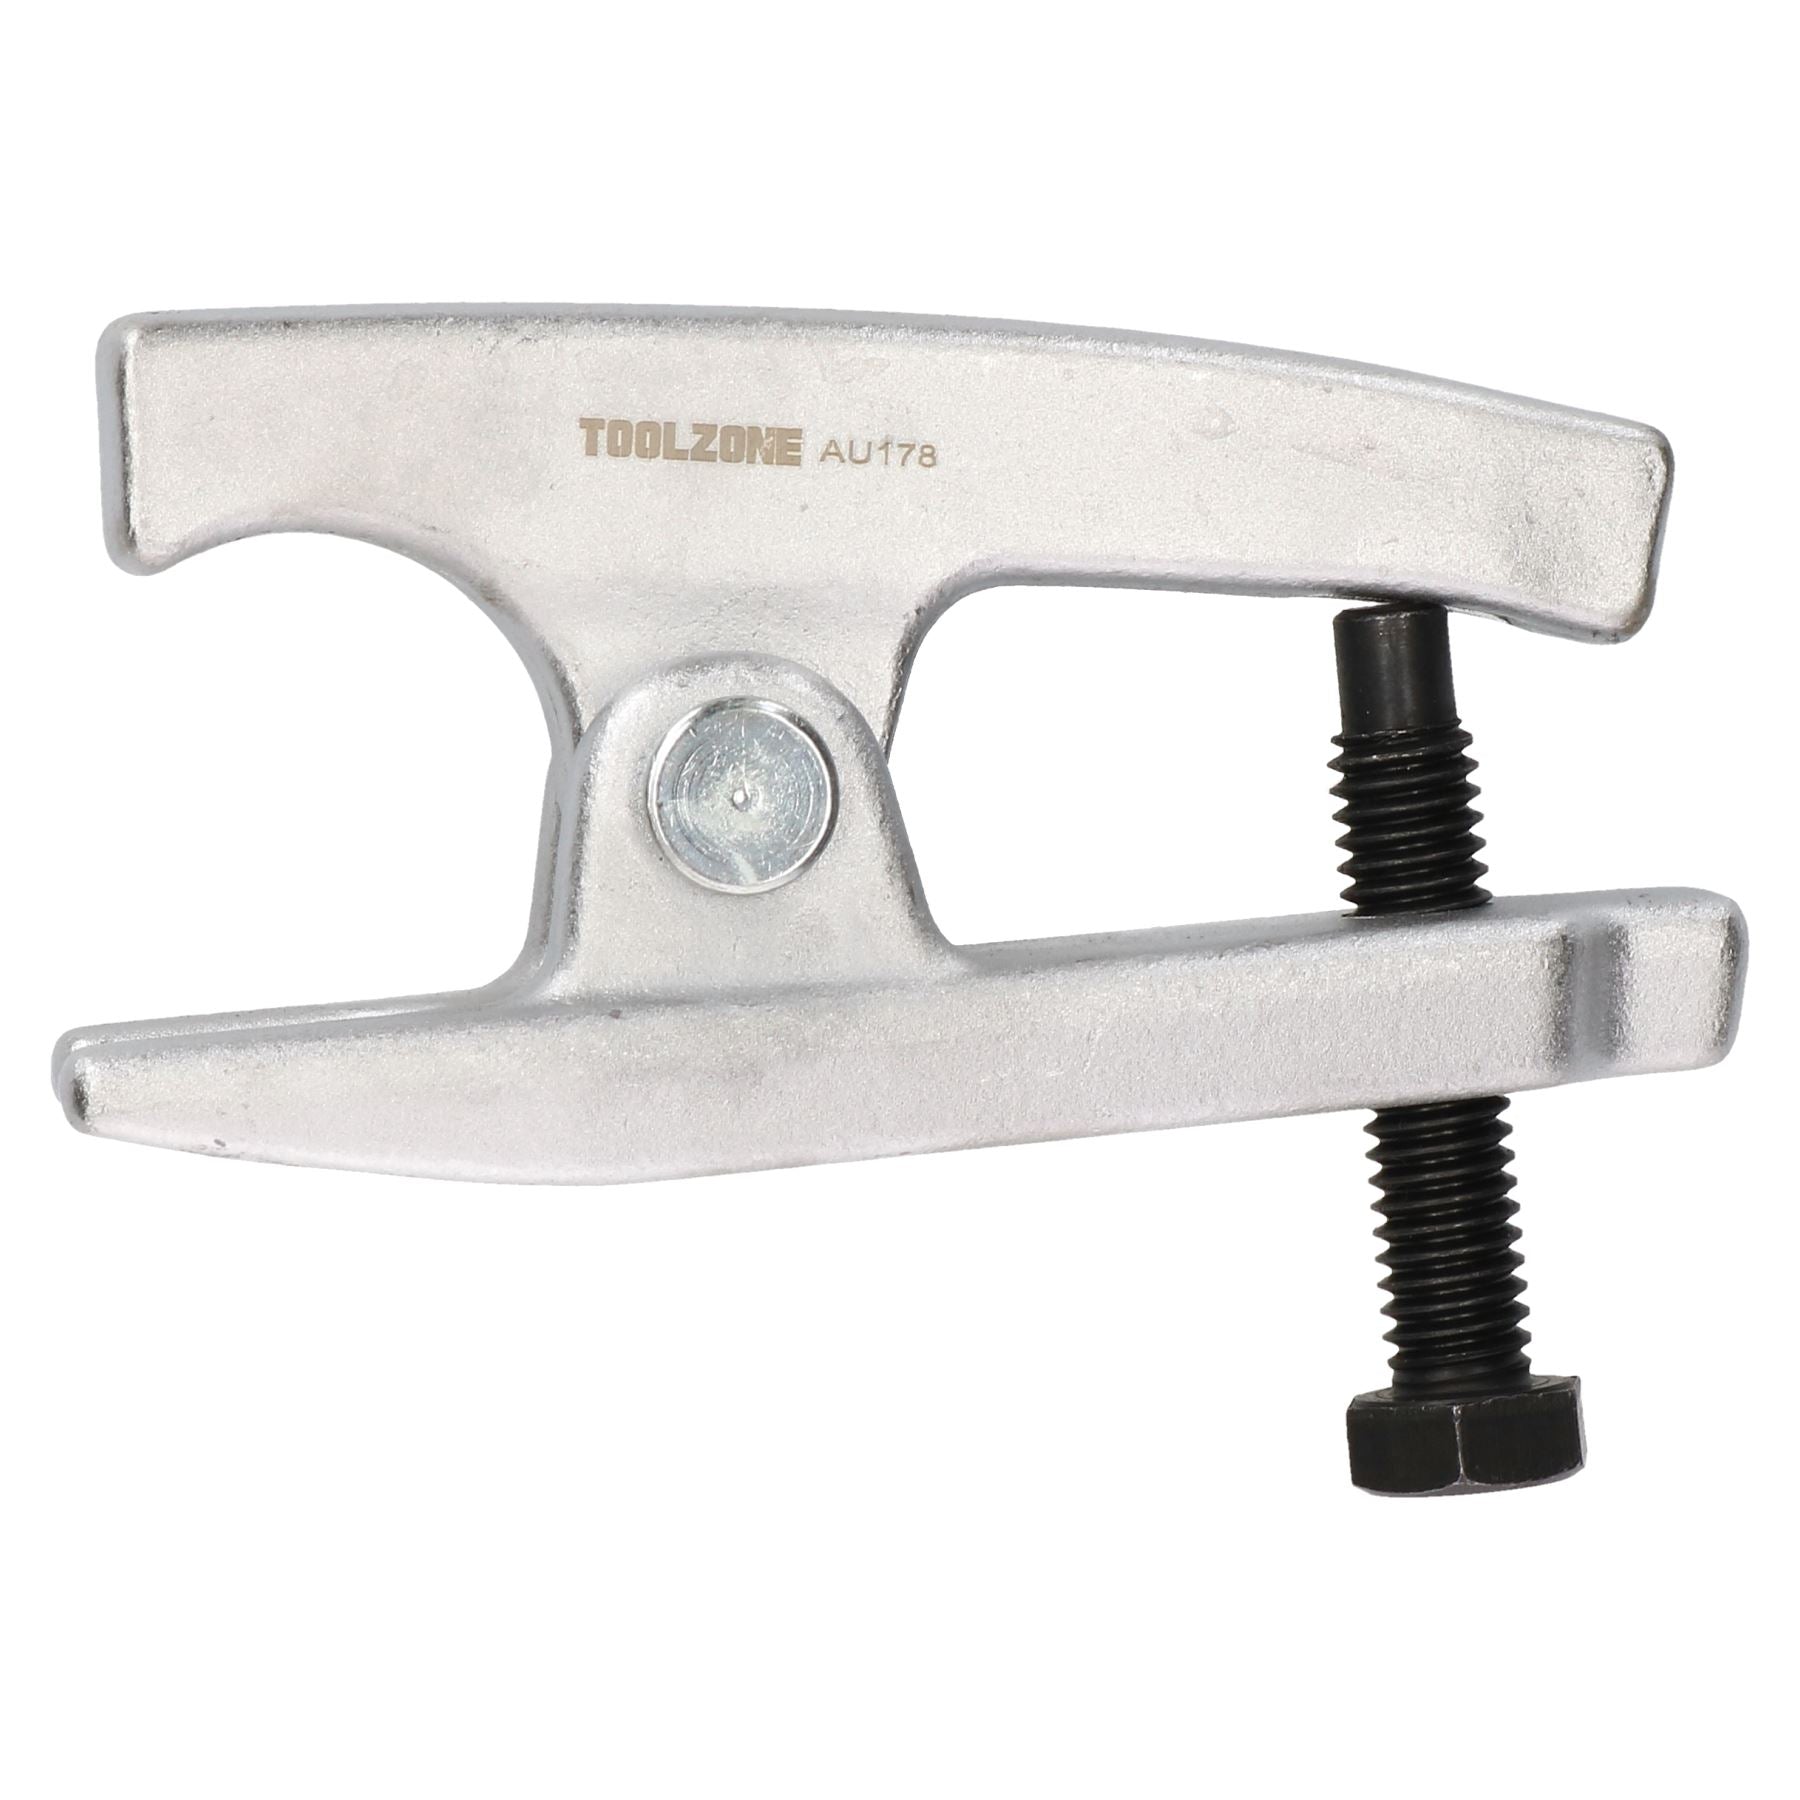 Ball Joint Splitter Tie & Track Rod End Lifter Separator Scissor Knuckle TE175